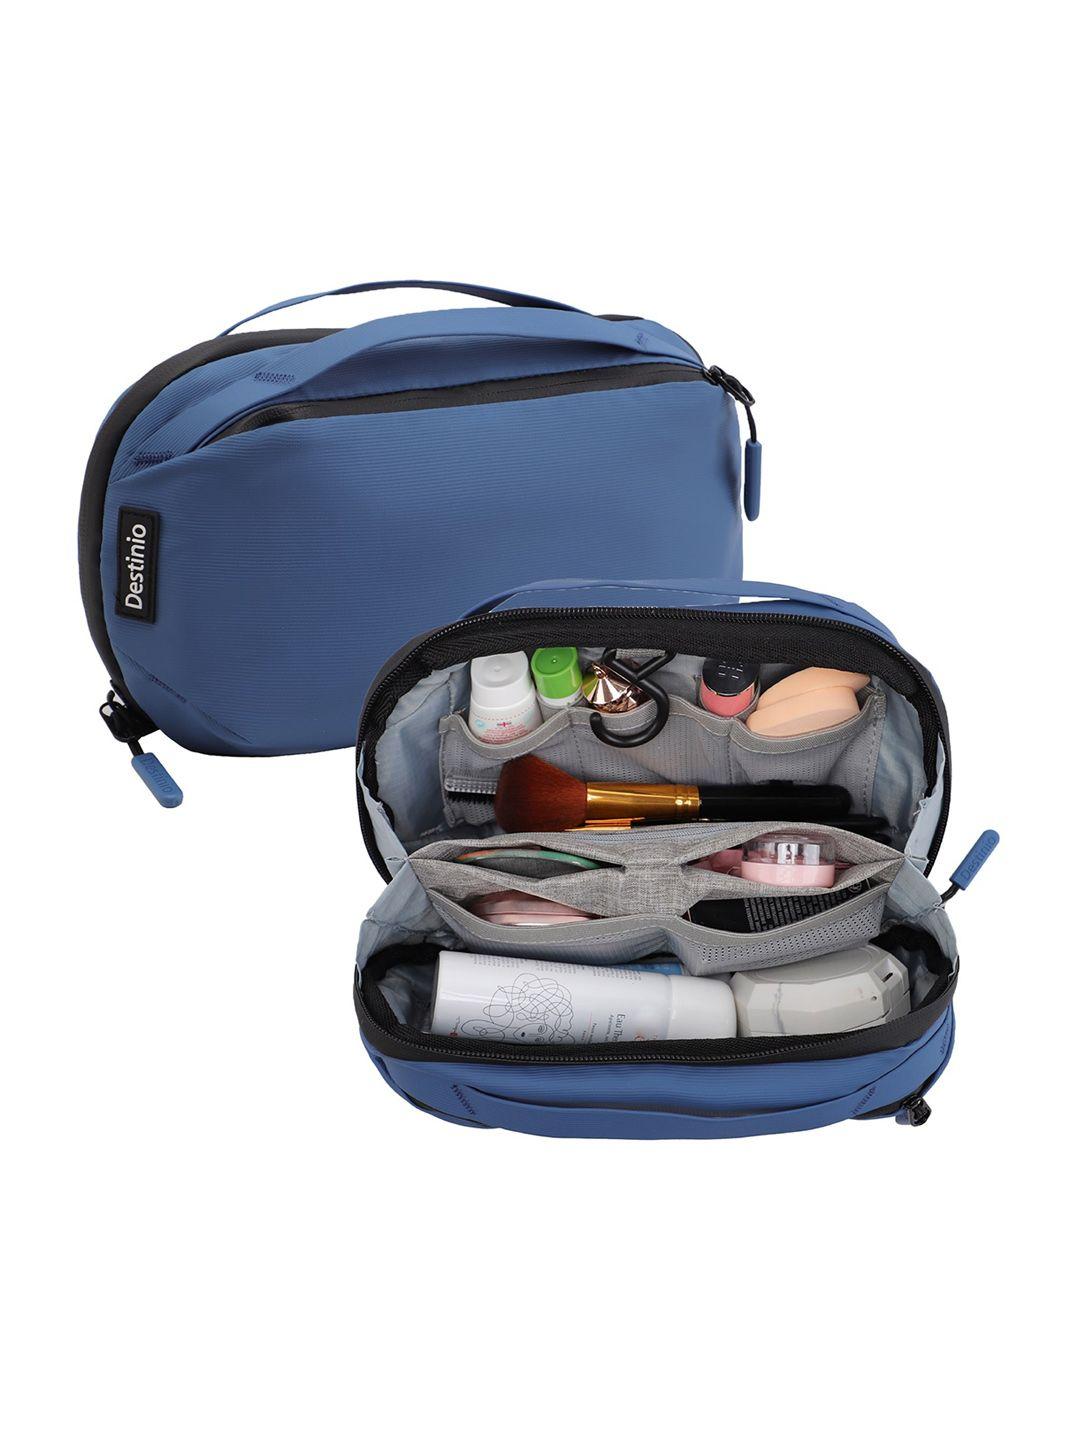 destinio travel toiletry kit pouch bag